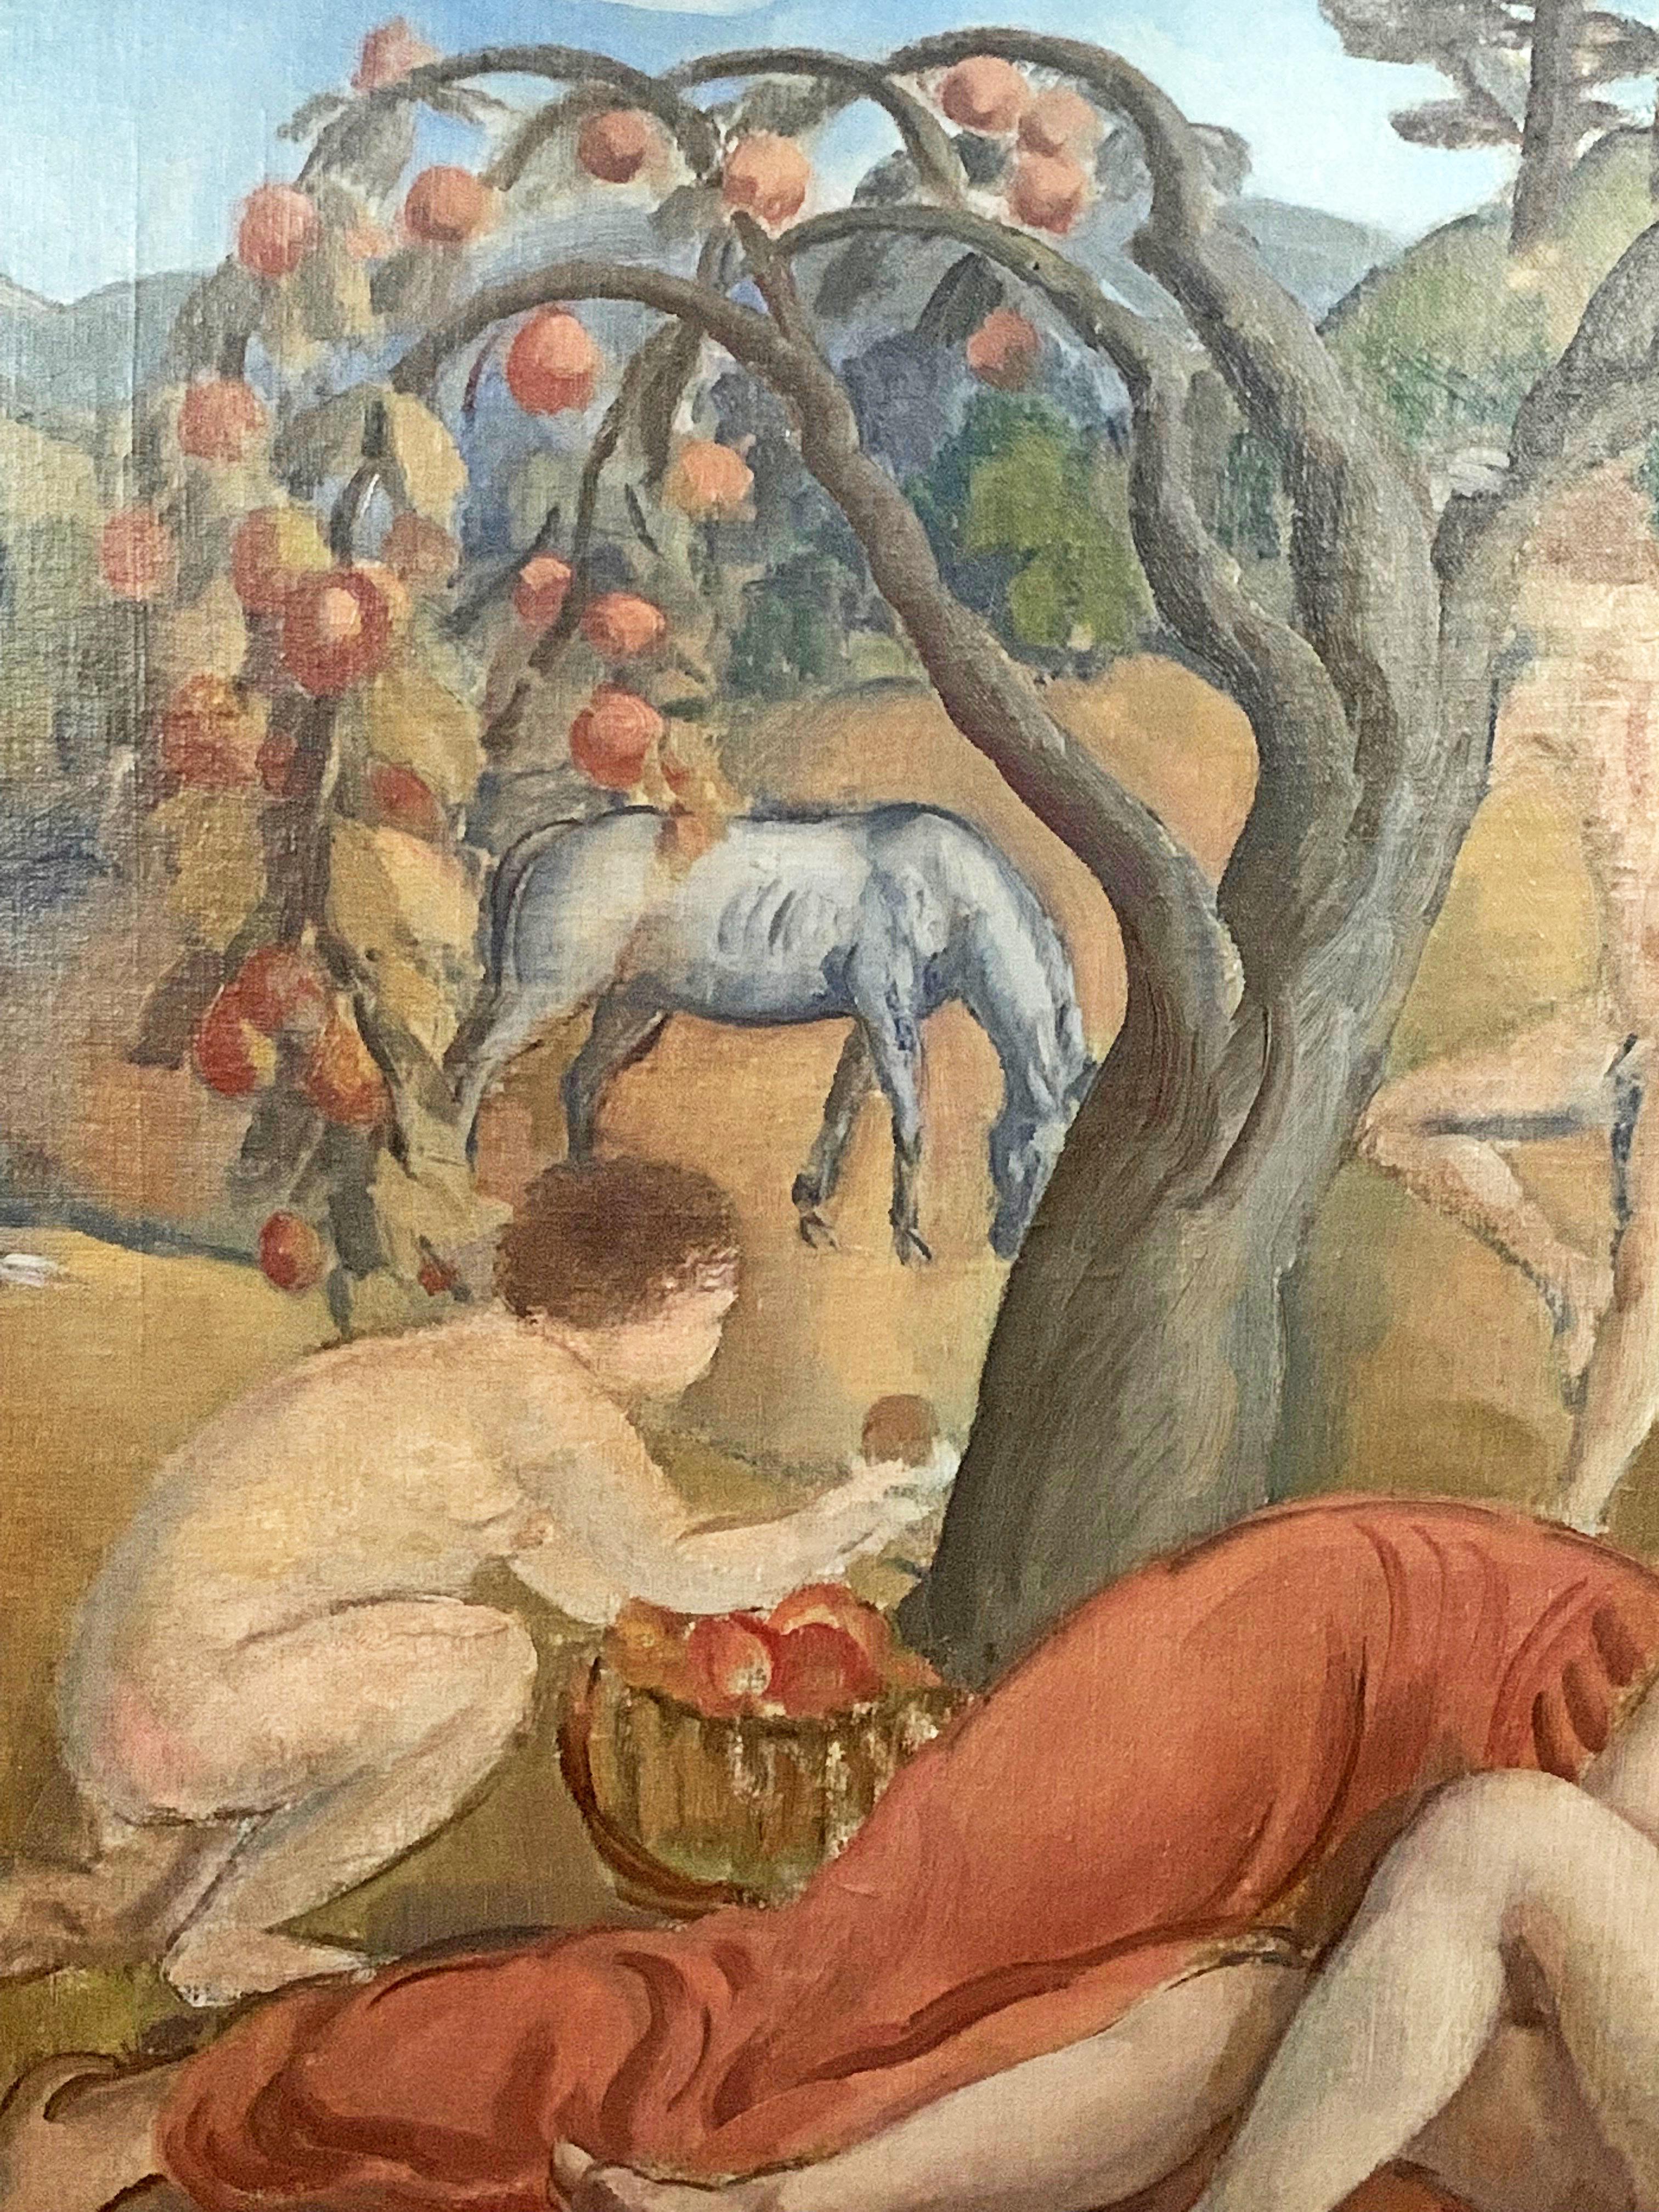 Cette magnifique représentation idyllique de personnages nus profitant de la beauté et de l'abondance de l'Arcadie, certains cueillant des pommes et d'autres faisant l'amour, a été peinte par David Karfunkle dans les années 1930, qui a immigré